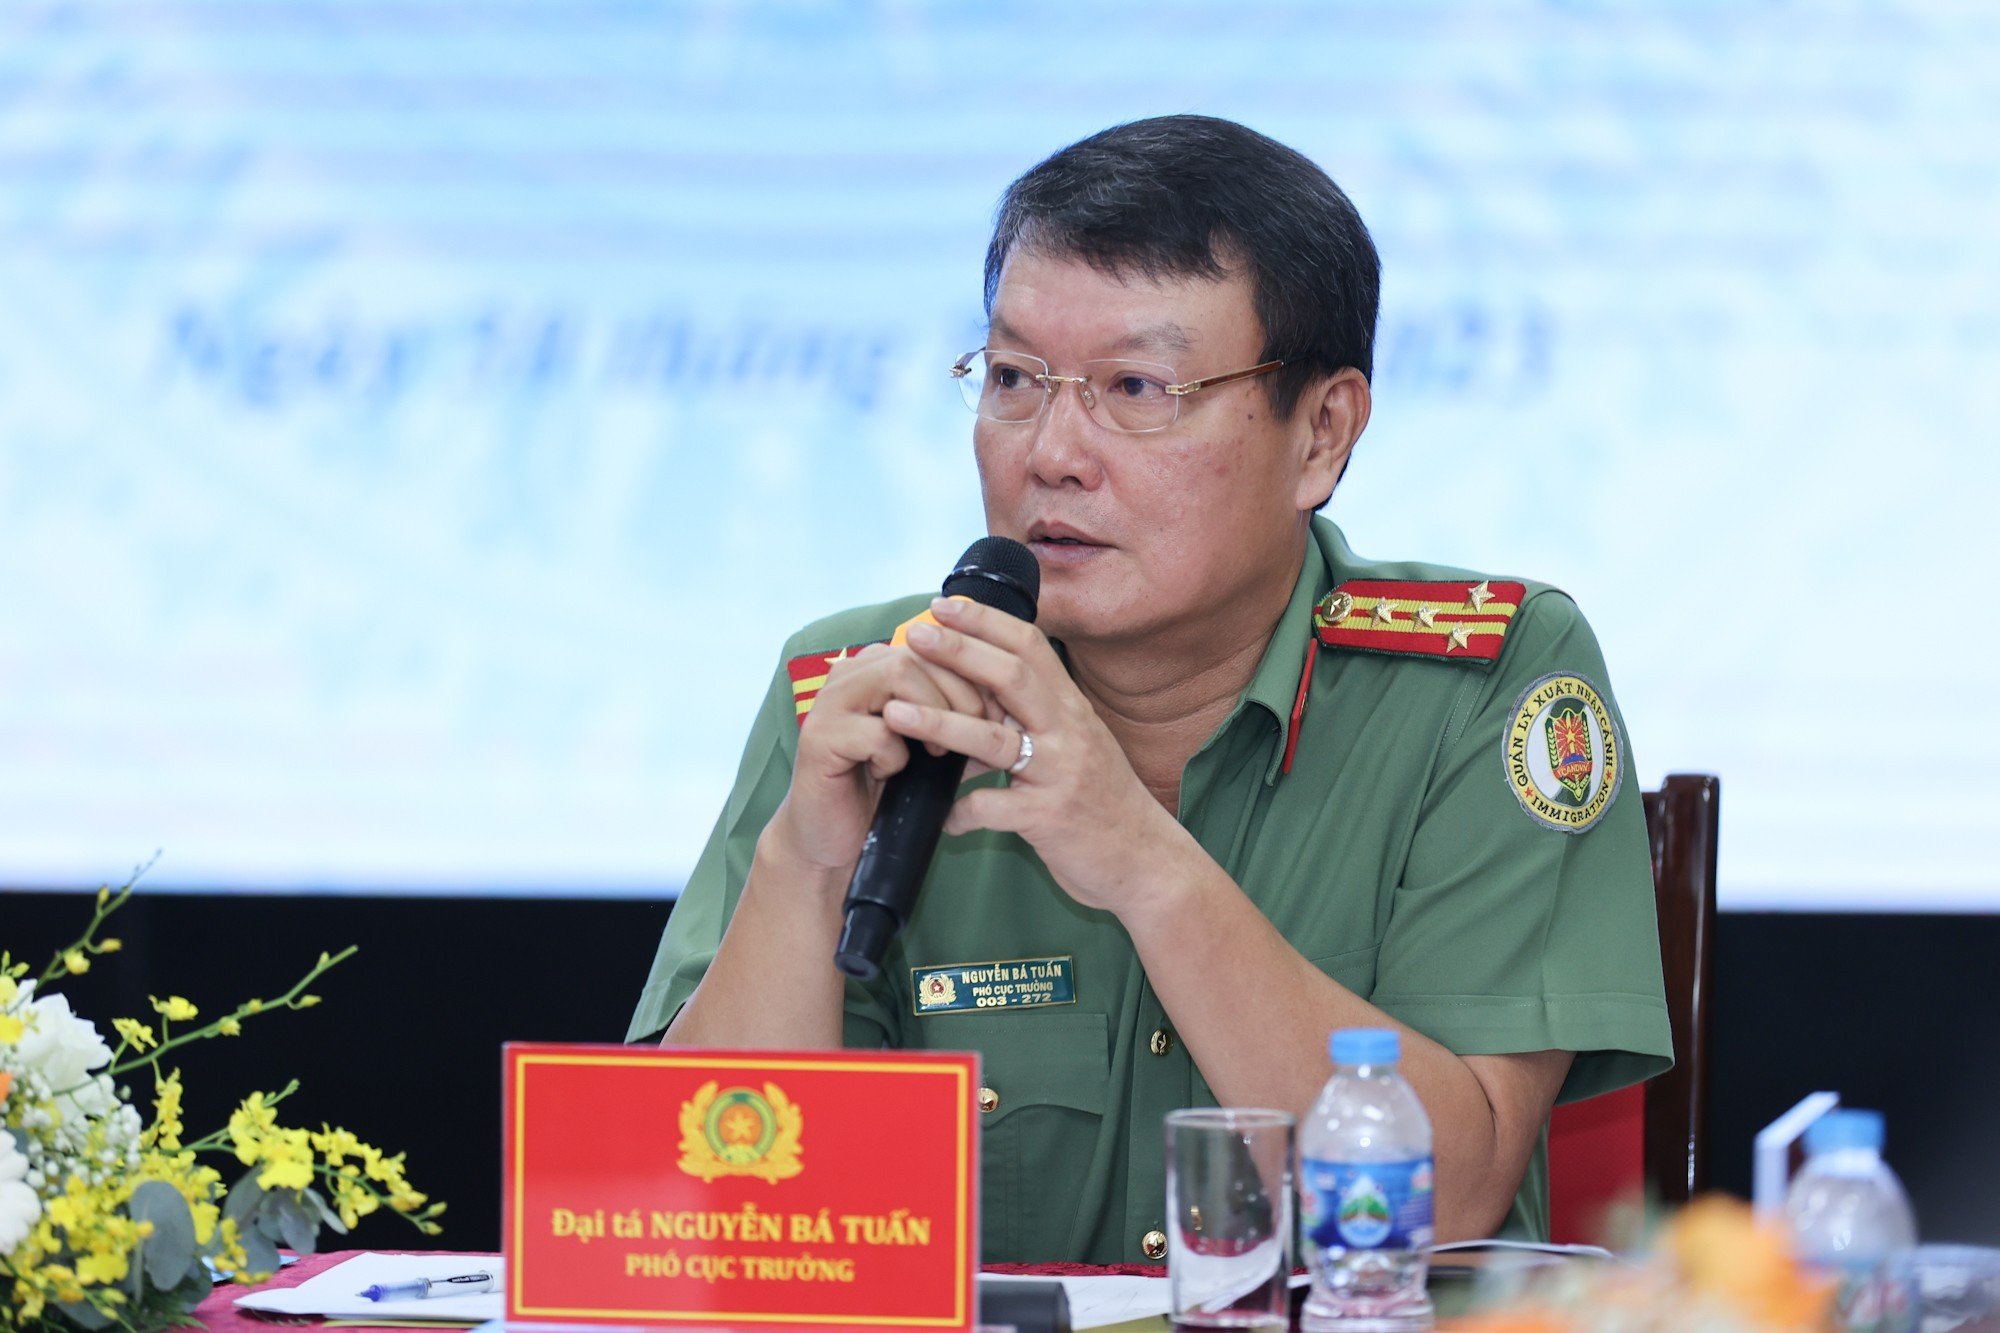 Đại tá Nguyễn Bá Tuấn - Phó Cục trưởng Cục Quản lý Xuất nhập cảnh. Ảnh: T.Vương